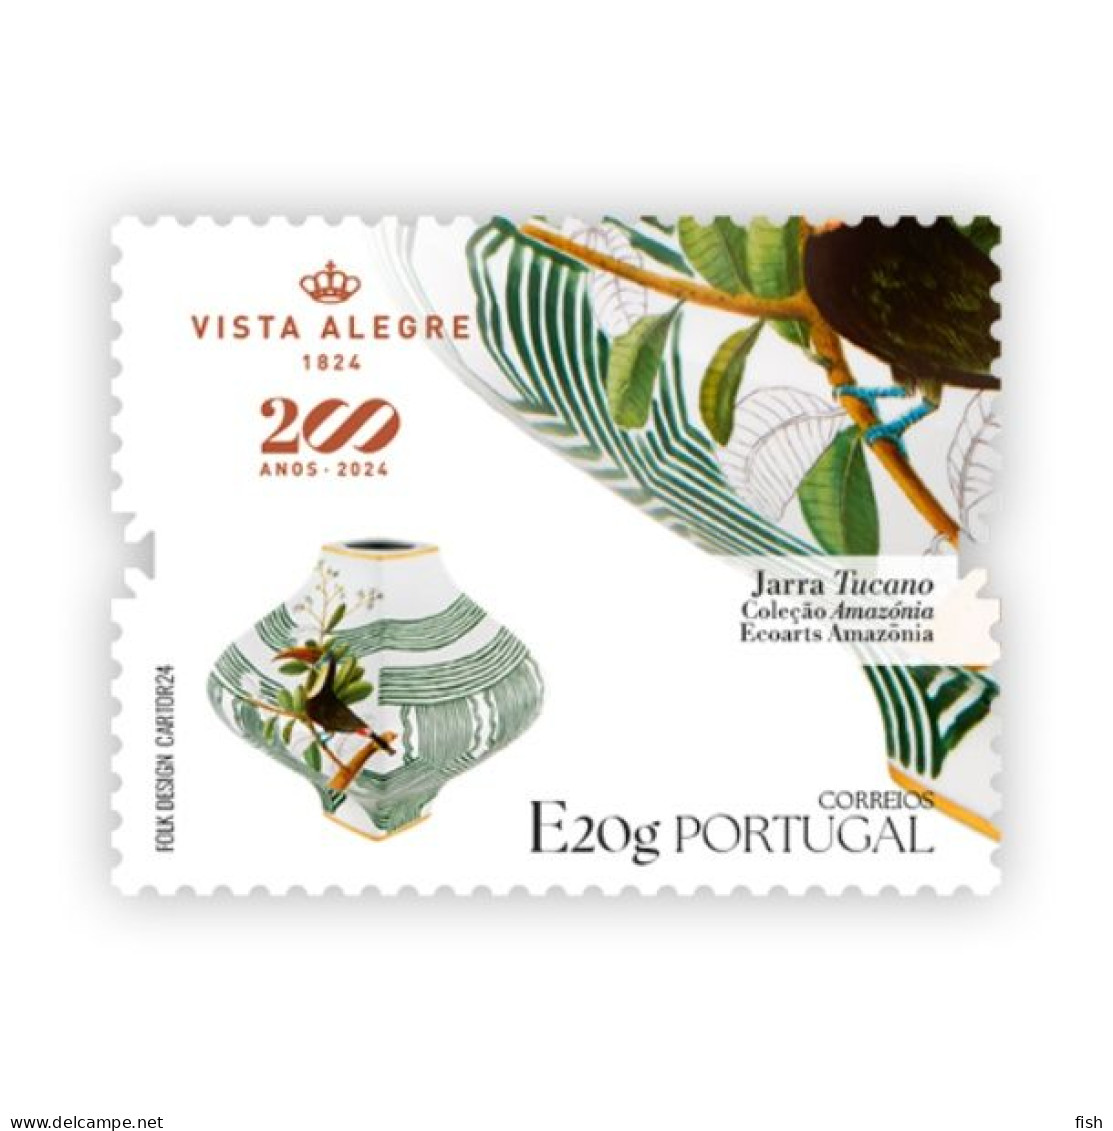 Portugal ** & 200 Years Of Vista Alegre, Tucano Jar, Amazonia Collection, Ecoarte Amazonia 1824-2024 (7199) - Protección Del Medio Ambiente Y Del Clima